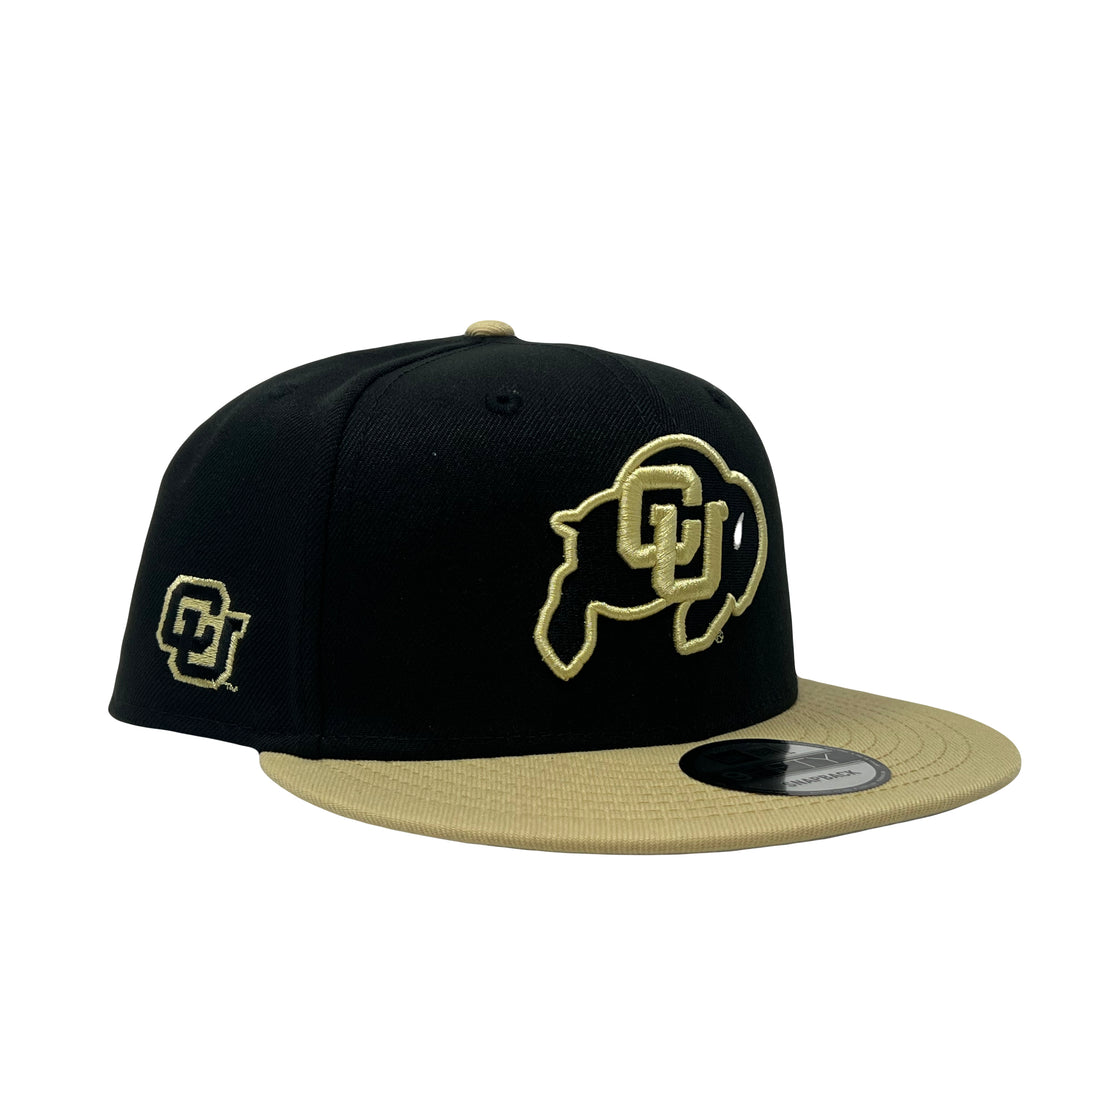 Colorado Buffaloes University of Colorado Boulder college NCAA Snapback Hat